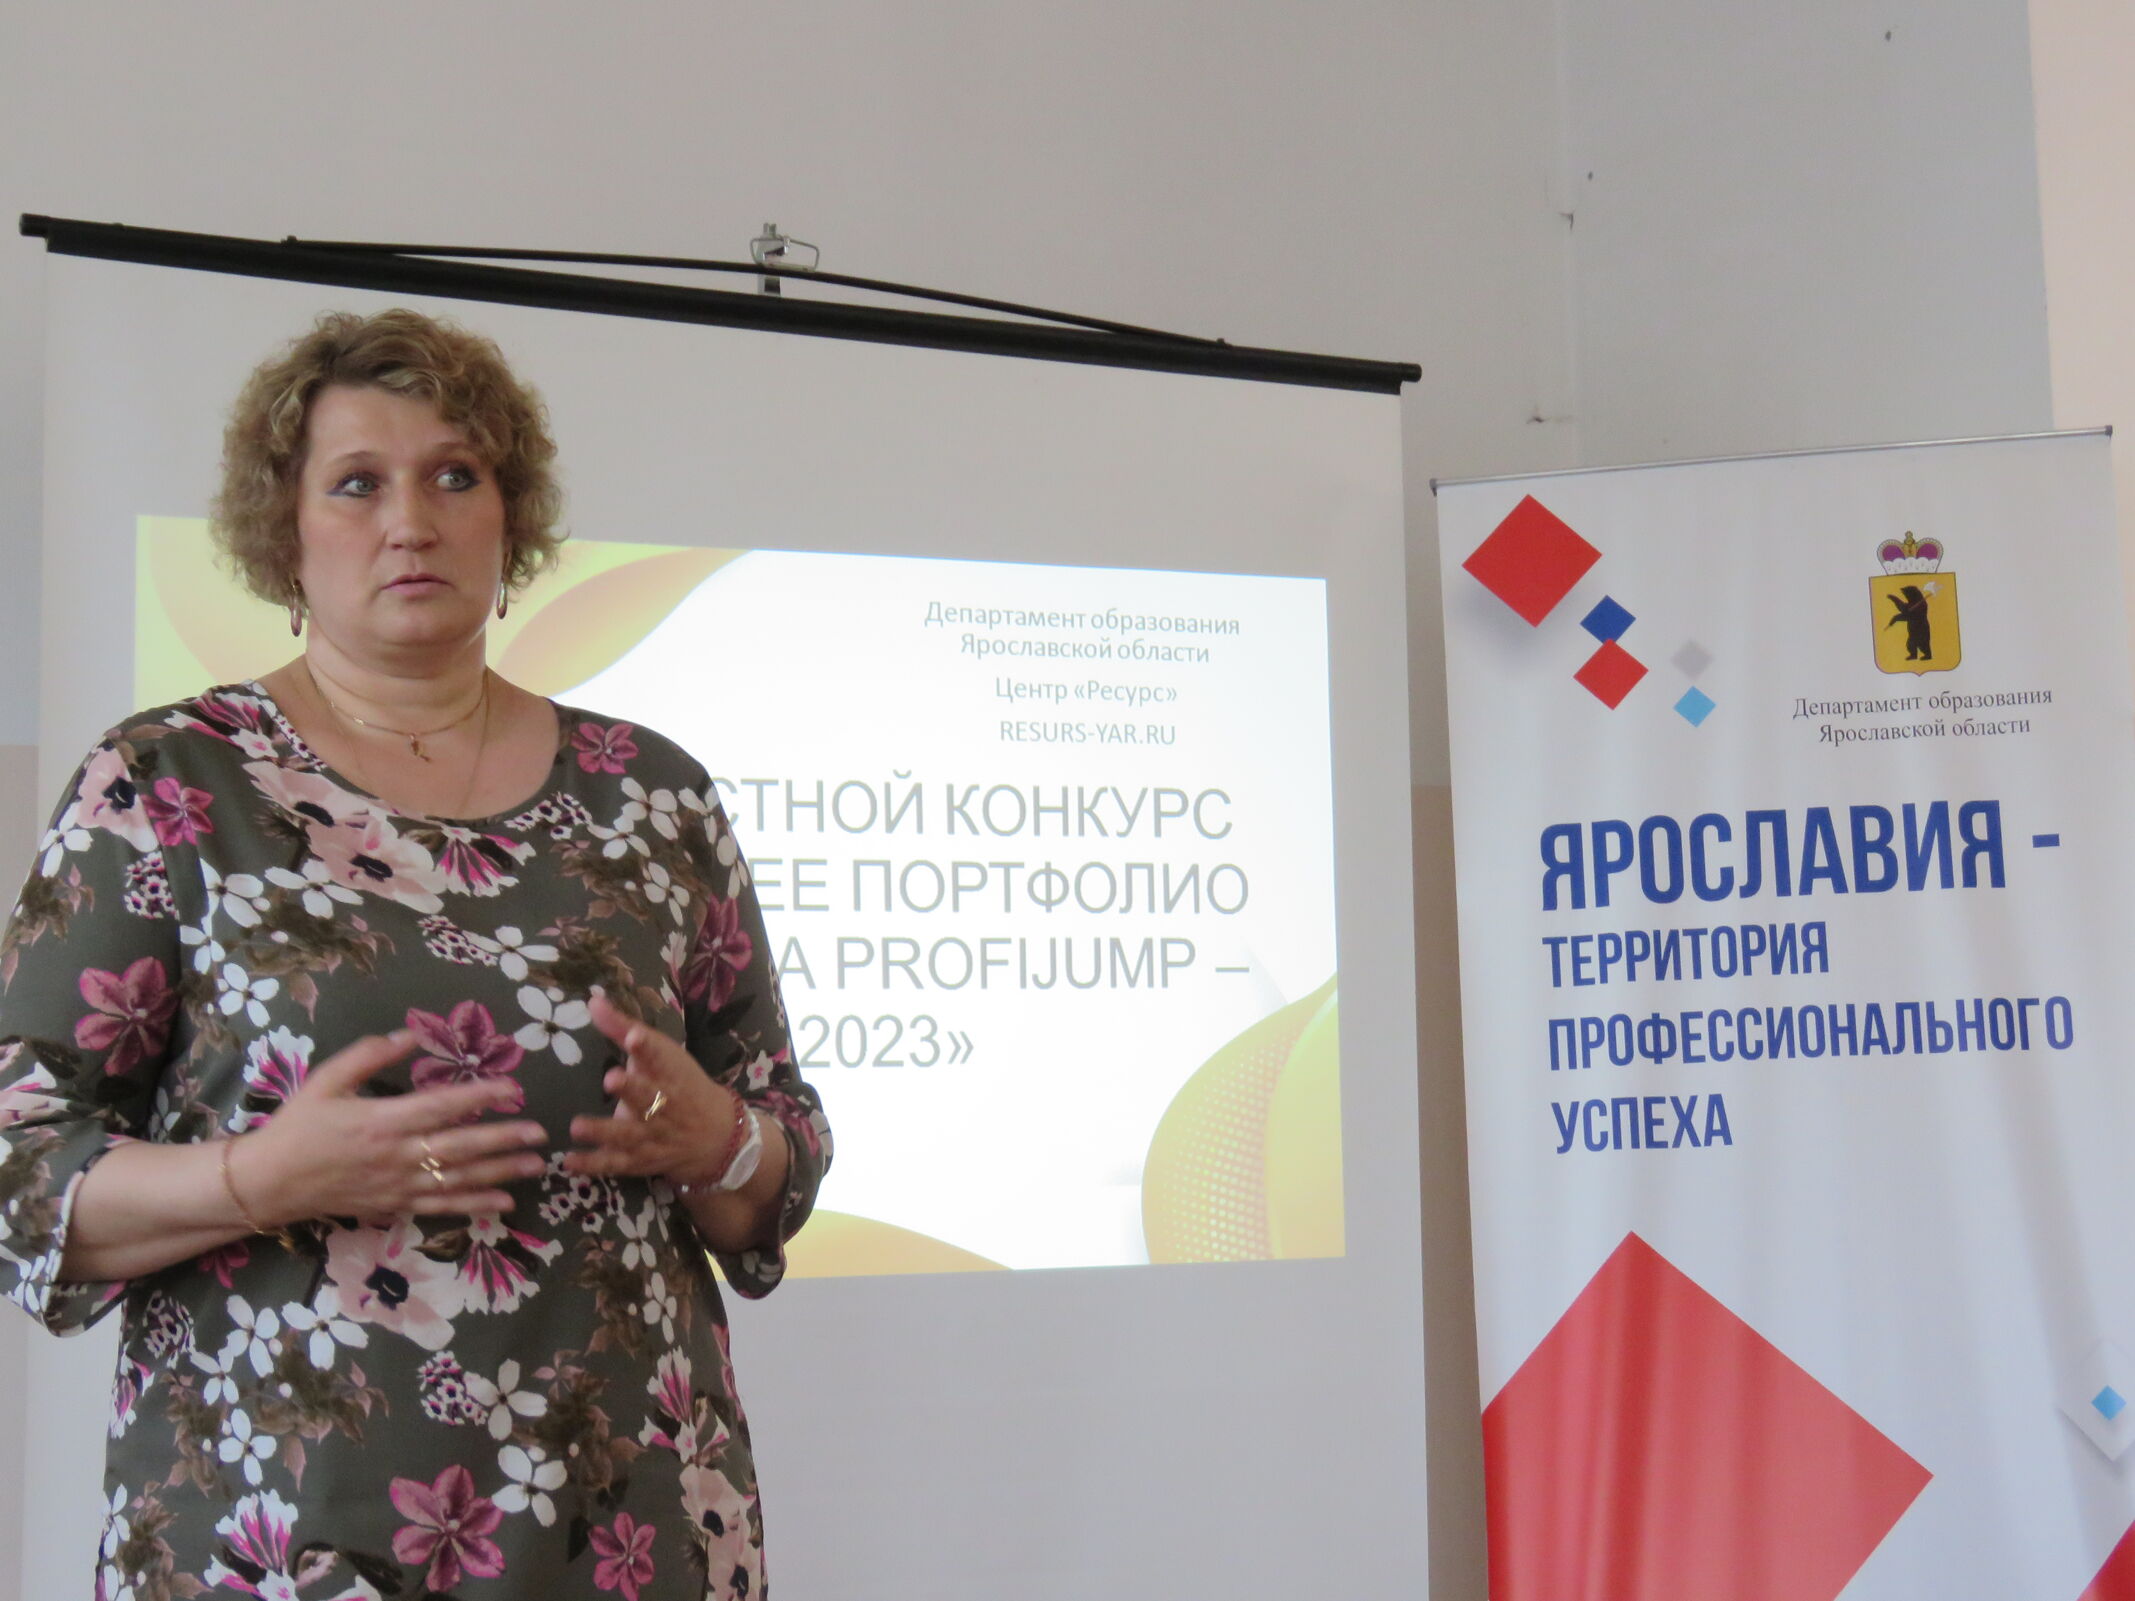 Участниками конкурса «Лучшее портфолио портала PROFIJUMP – 2023» стали более 100 ярославцев